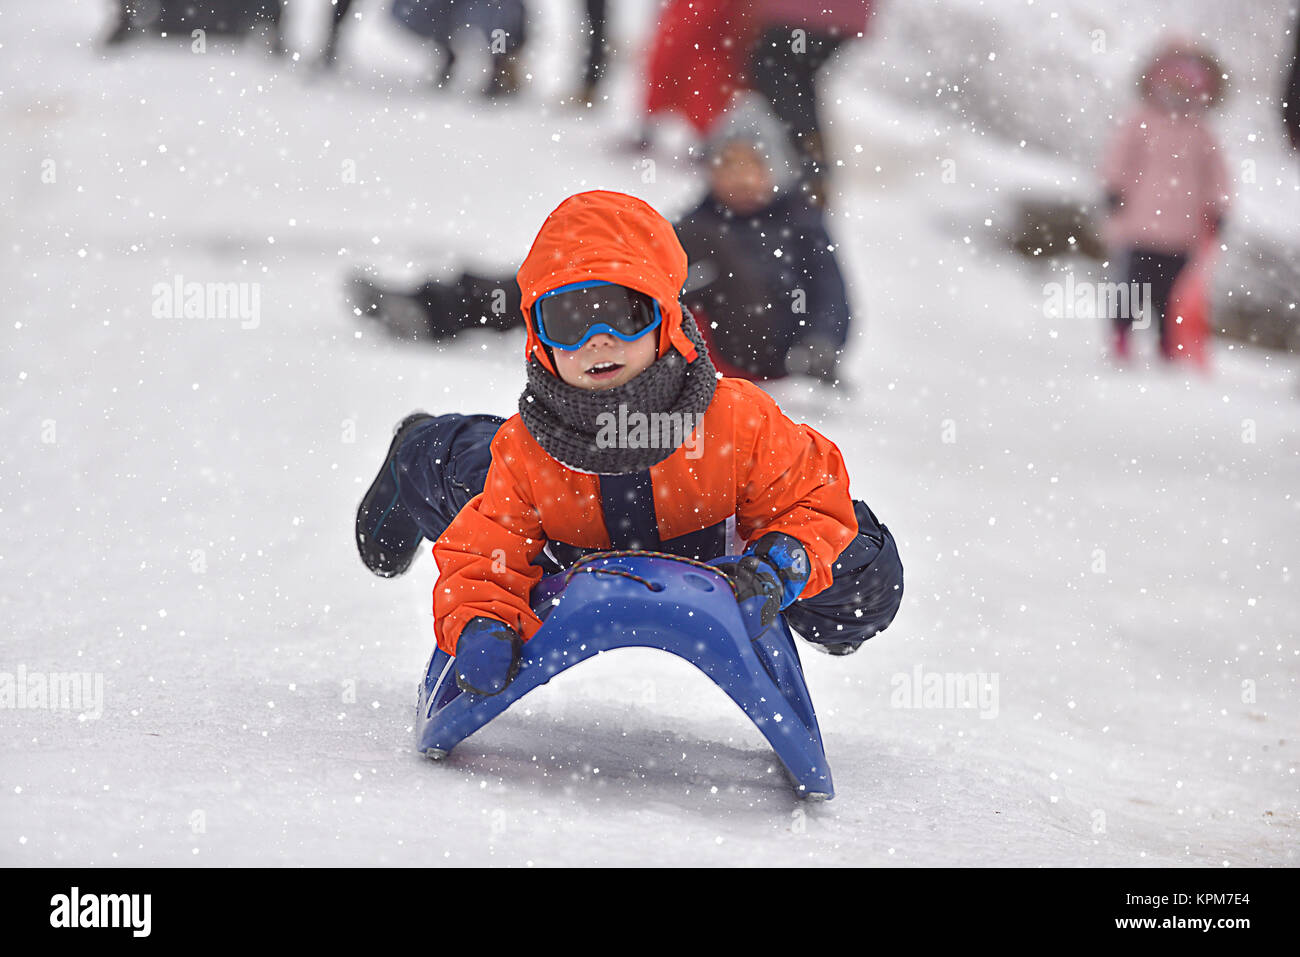 Little boy Reiten auf Schnee rutschen im Winter Stockfotografie - Alamy